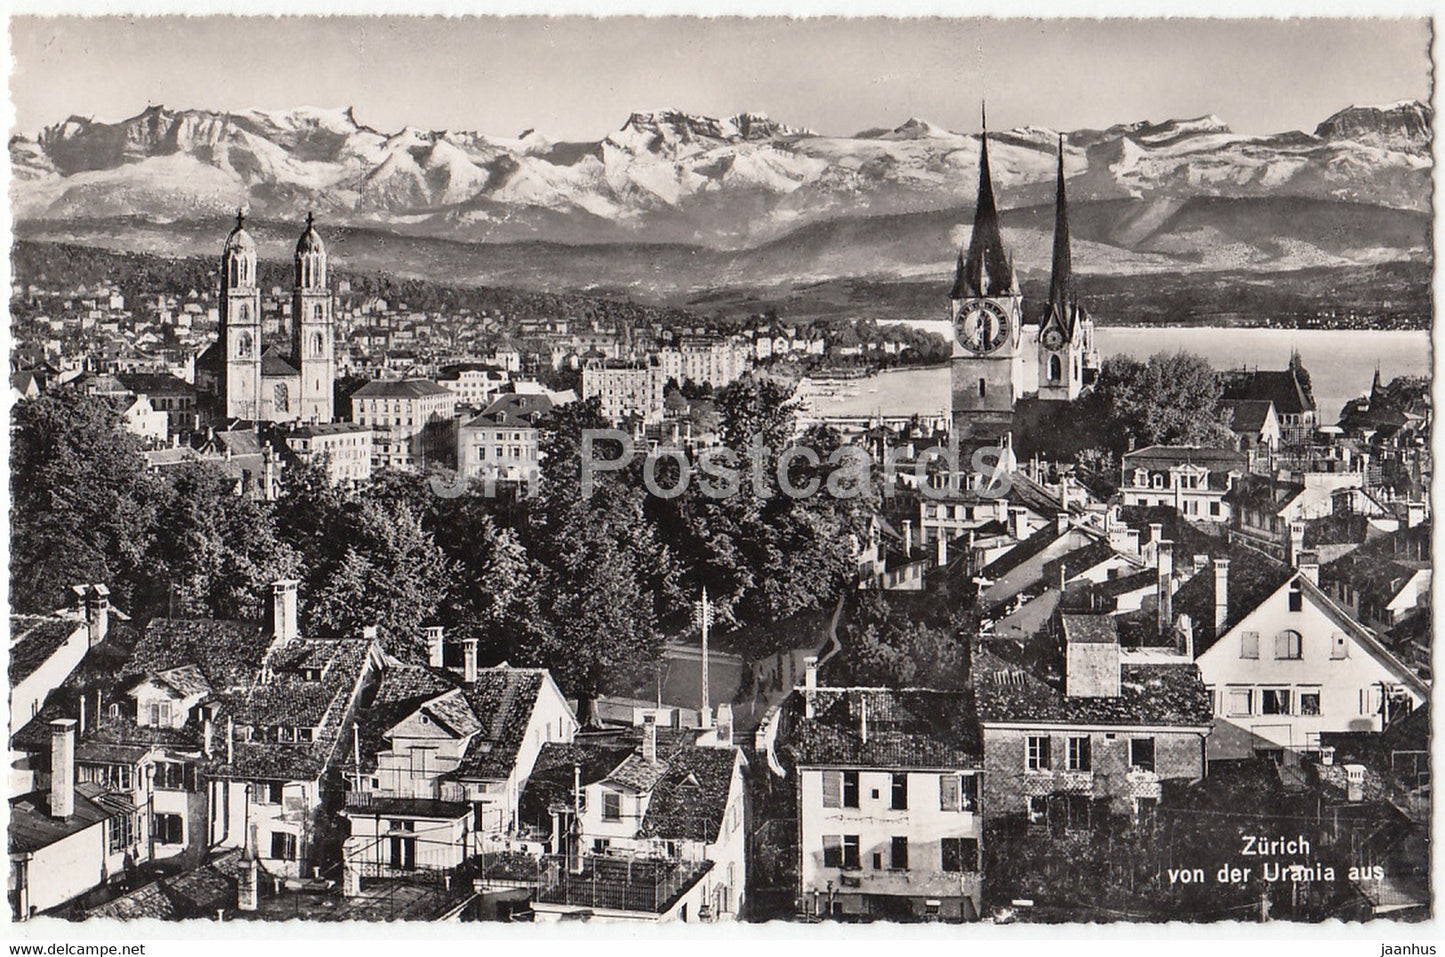 Zurich von der Urania aus - 1955 - Switzerland - unused - JH Postcards